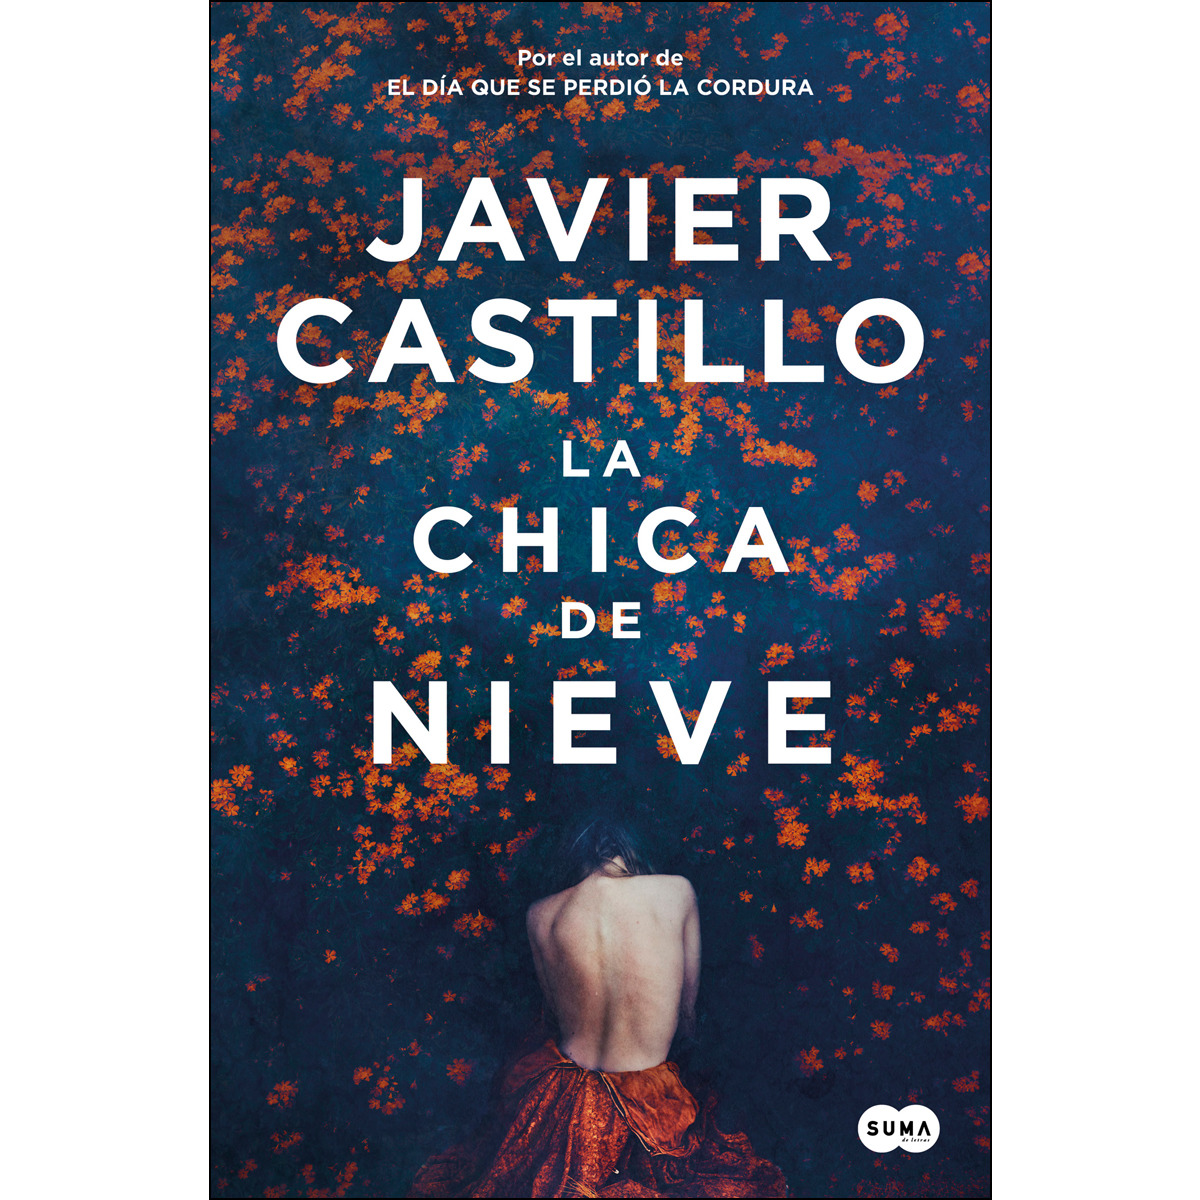 Javier Castillo lanza su nueva novela